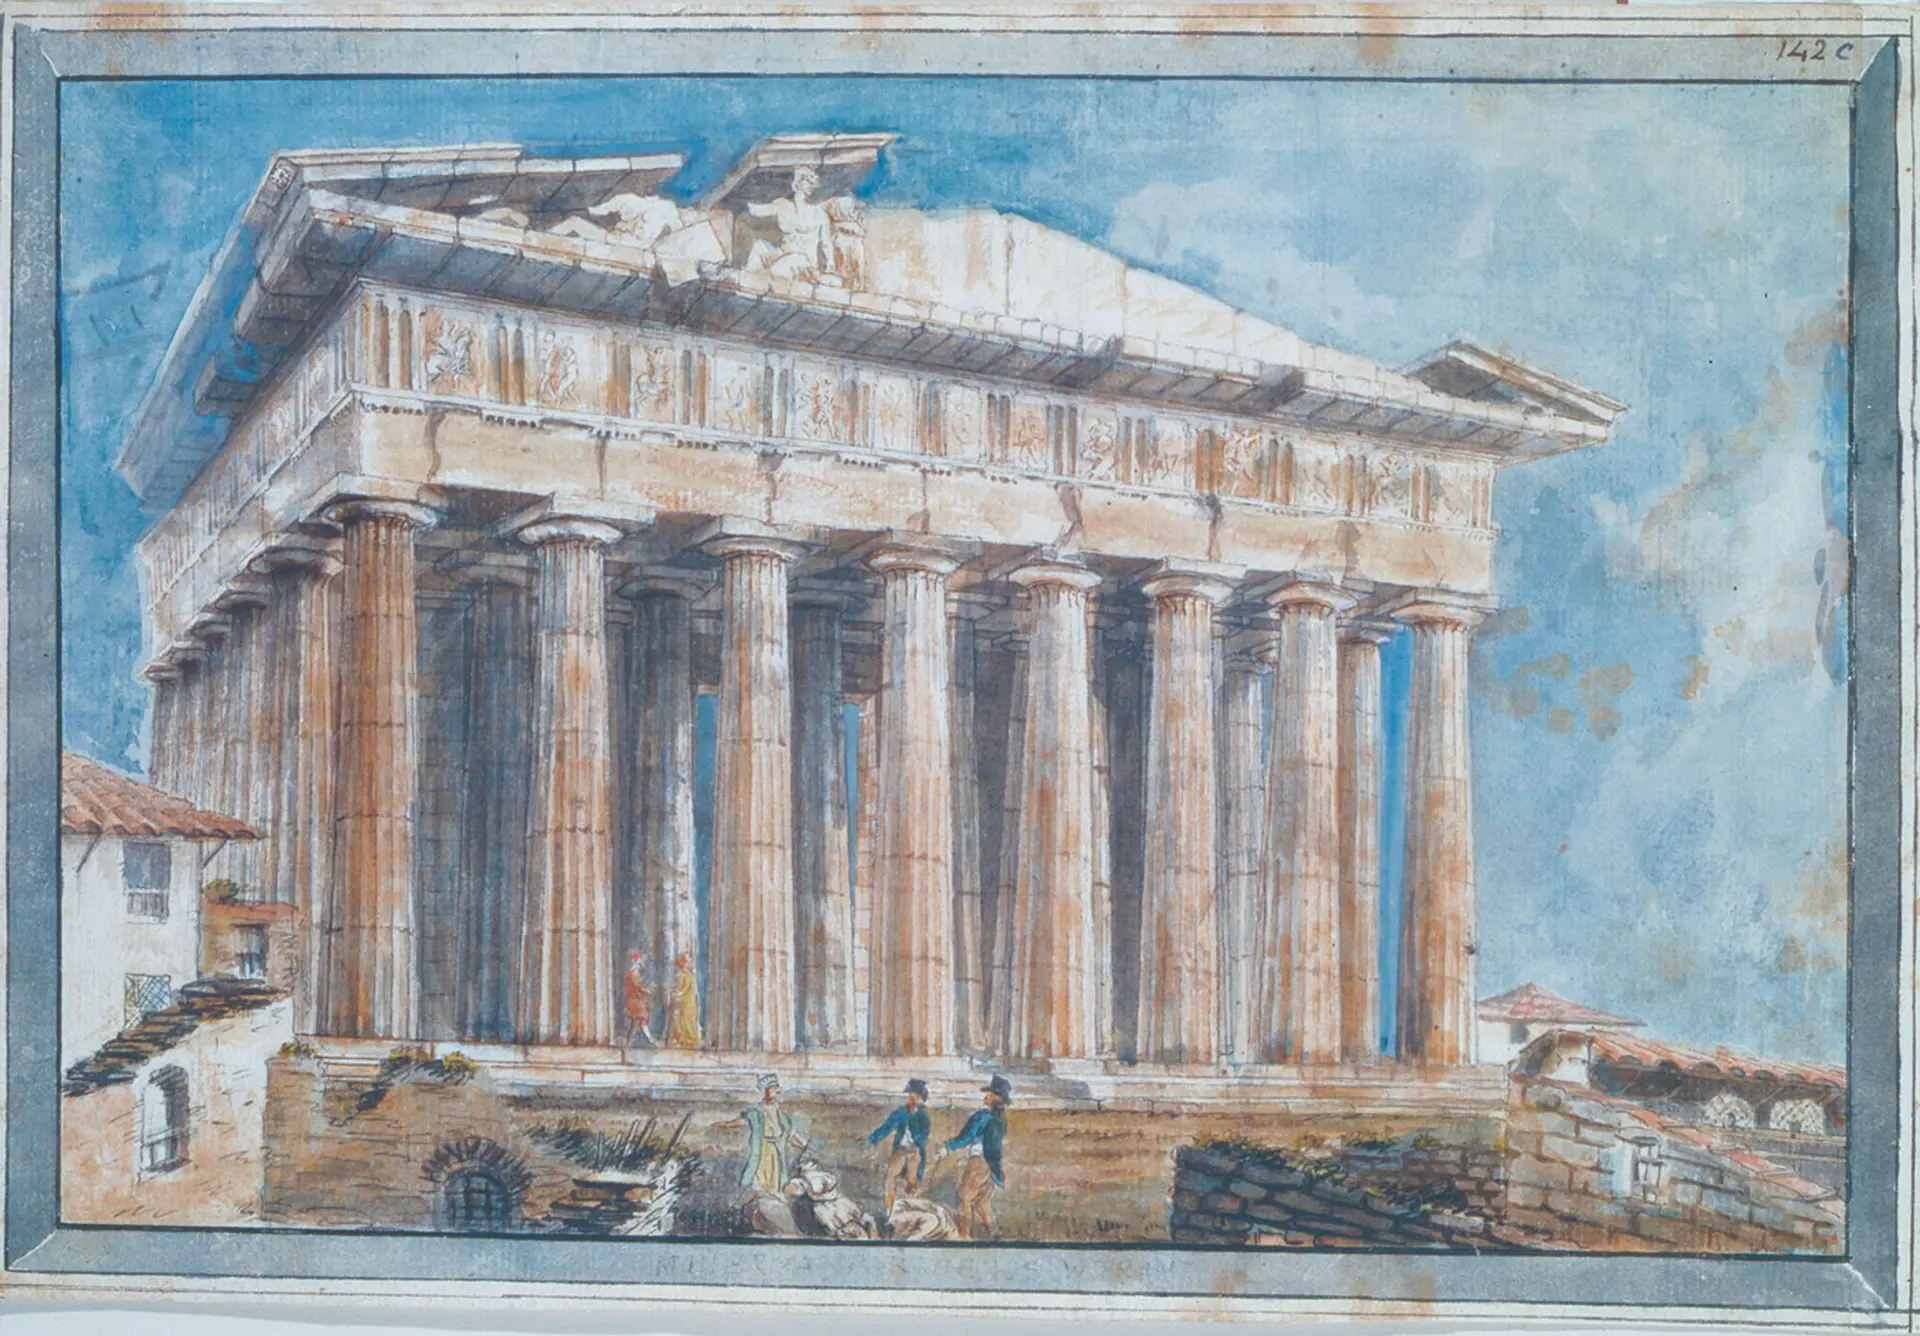 Γουίλιαμ Γκελ, Η αφαίρεση των Γλυπτών από τα αετώματα του Παρθενώνα από τον Έλγιν, 1801, Μουσείο Μπενάκη